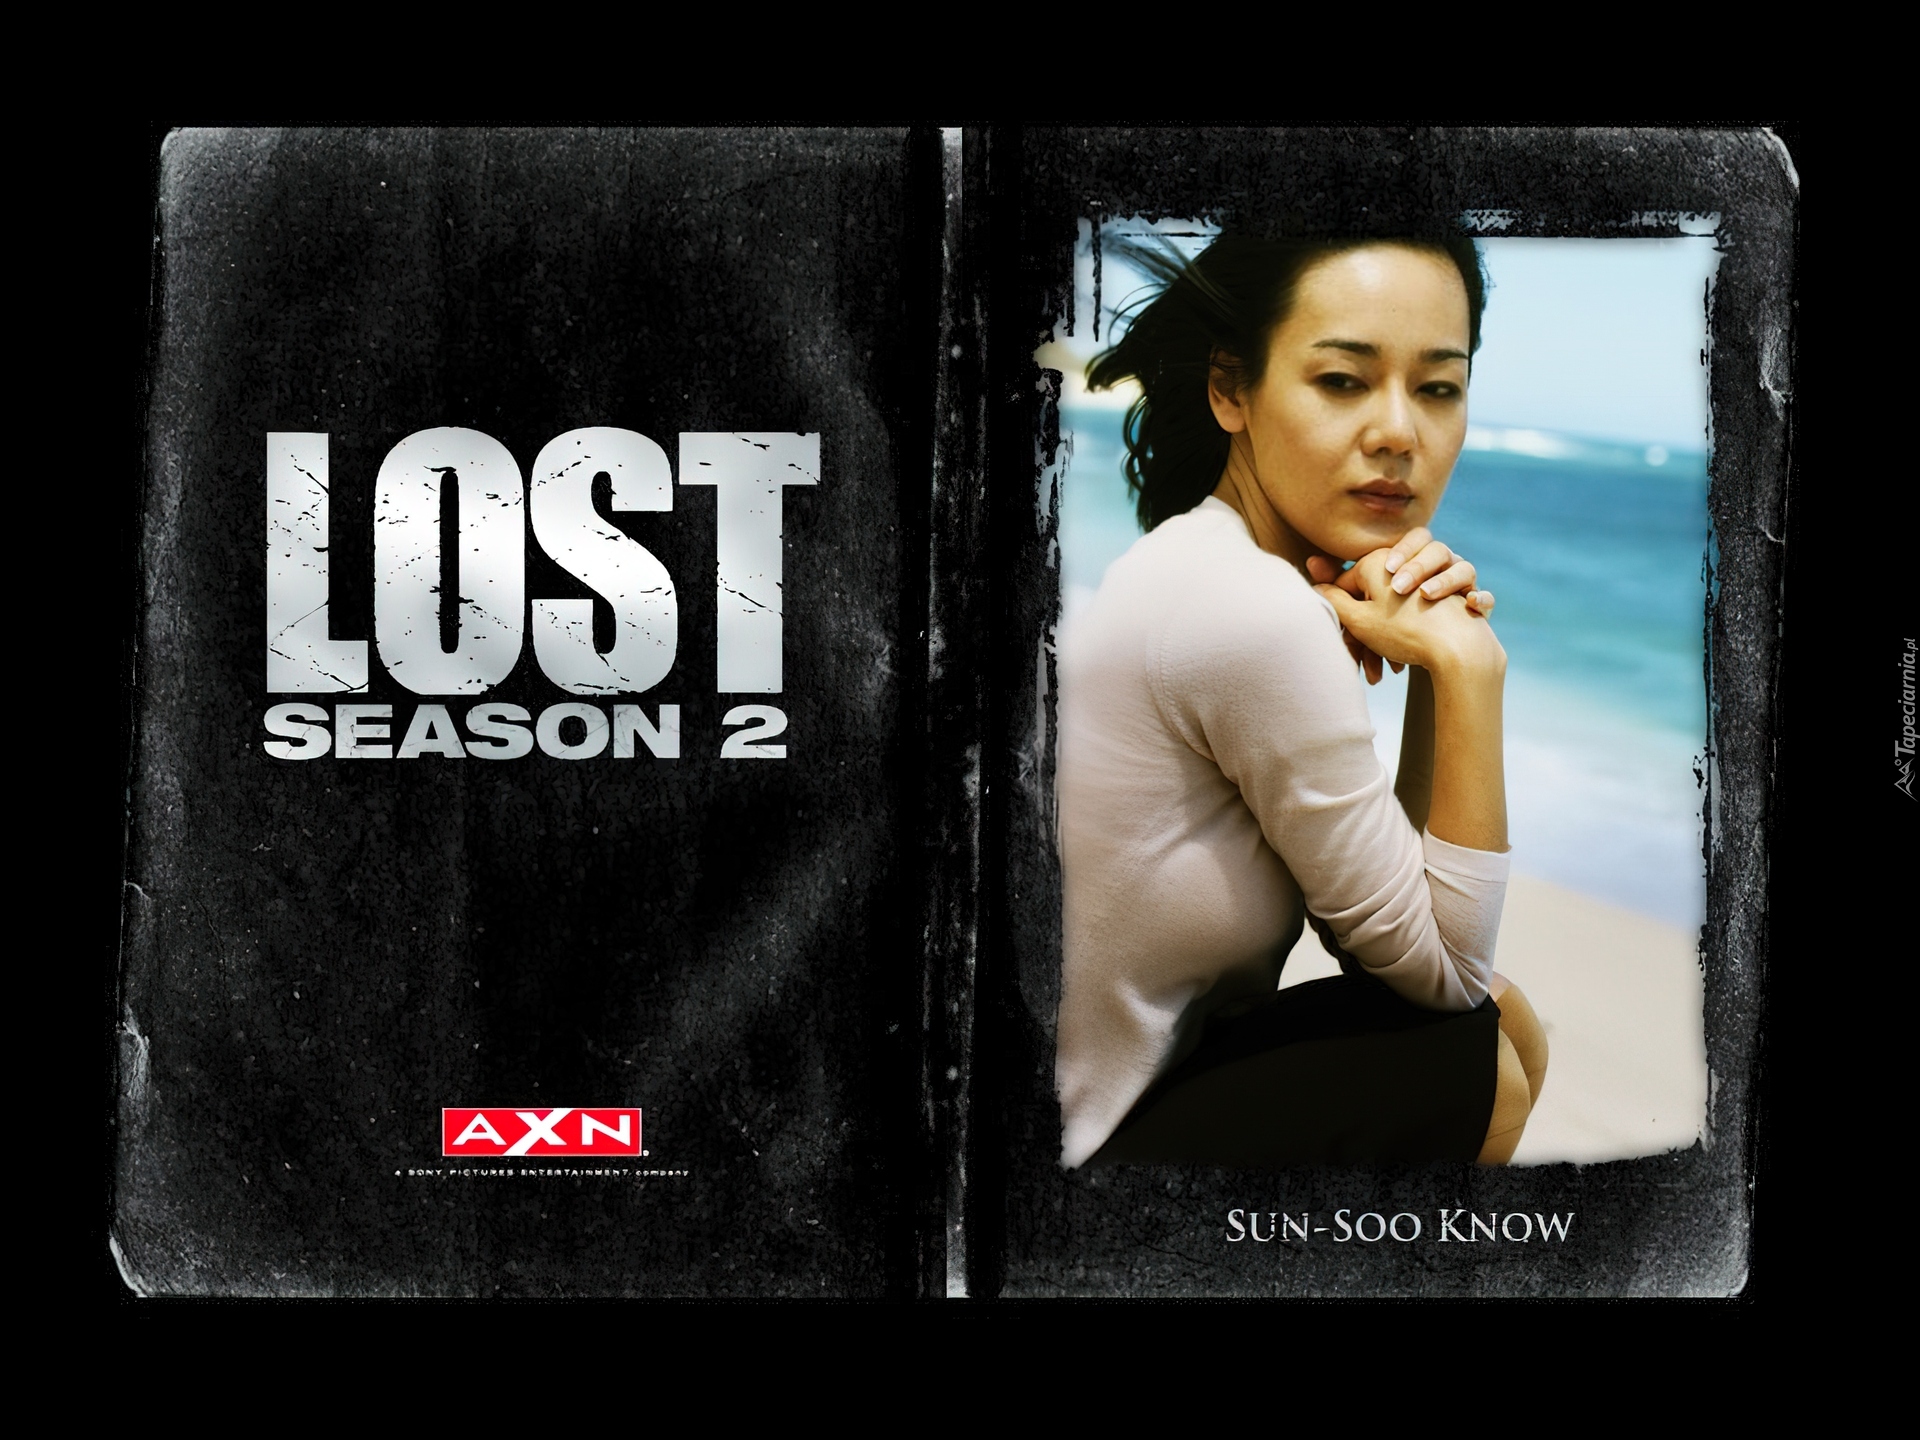 Filmy Lost, Yoon-jin Kim, siedzi, zdjęcie